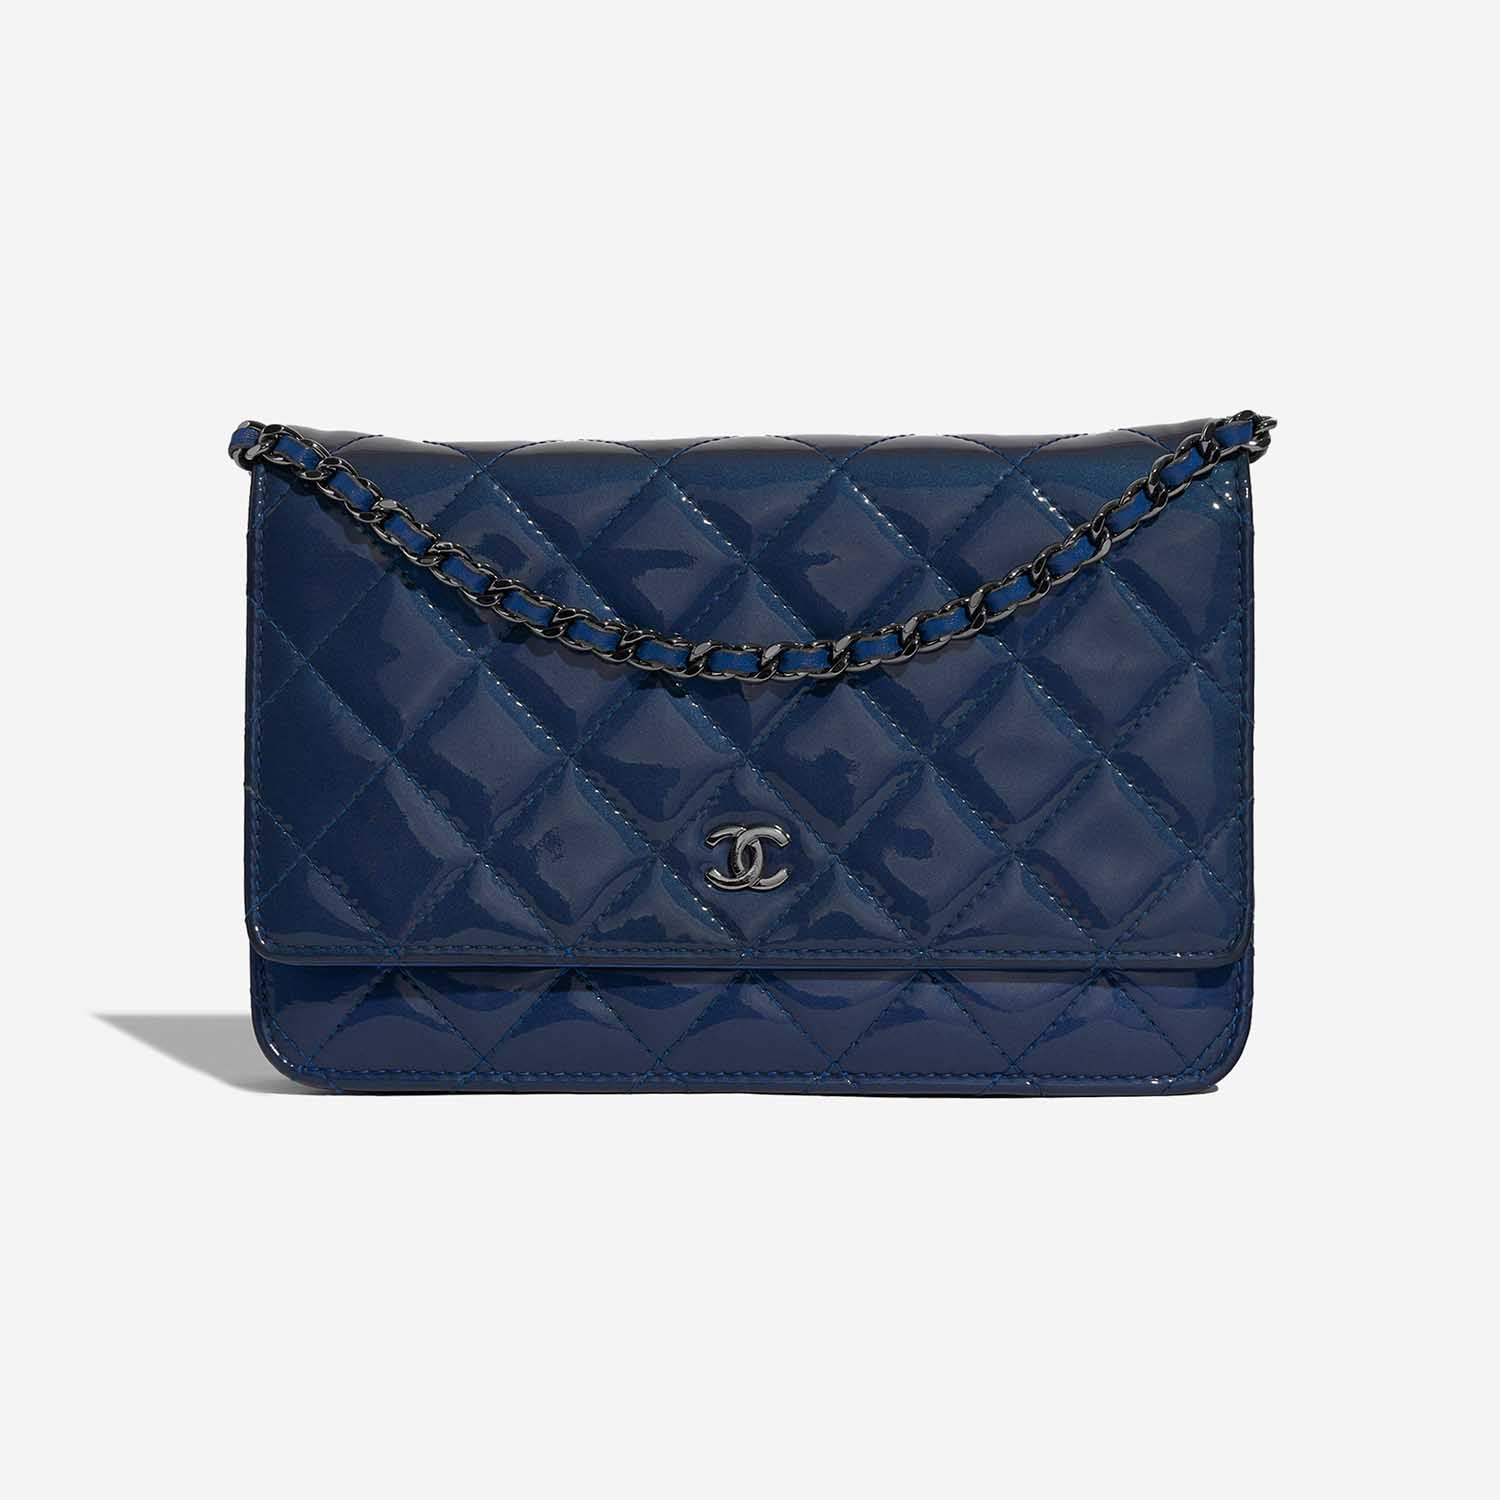 Chanel Timeless WOC Blau 2F S | Verkaufen Sie Ihre Designer-Tasche auf Saclab.com